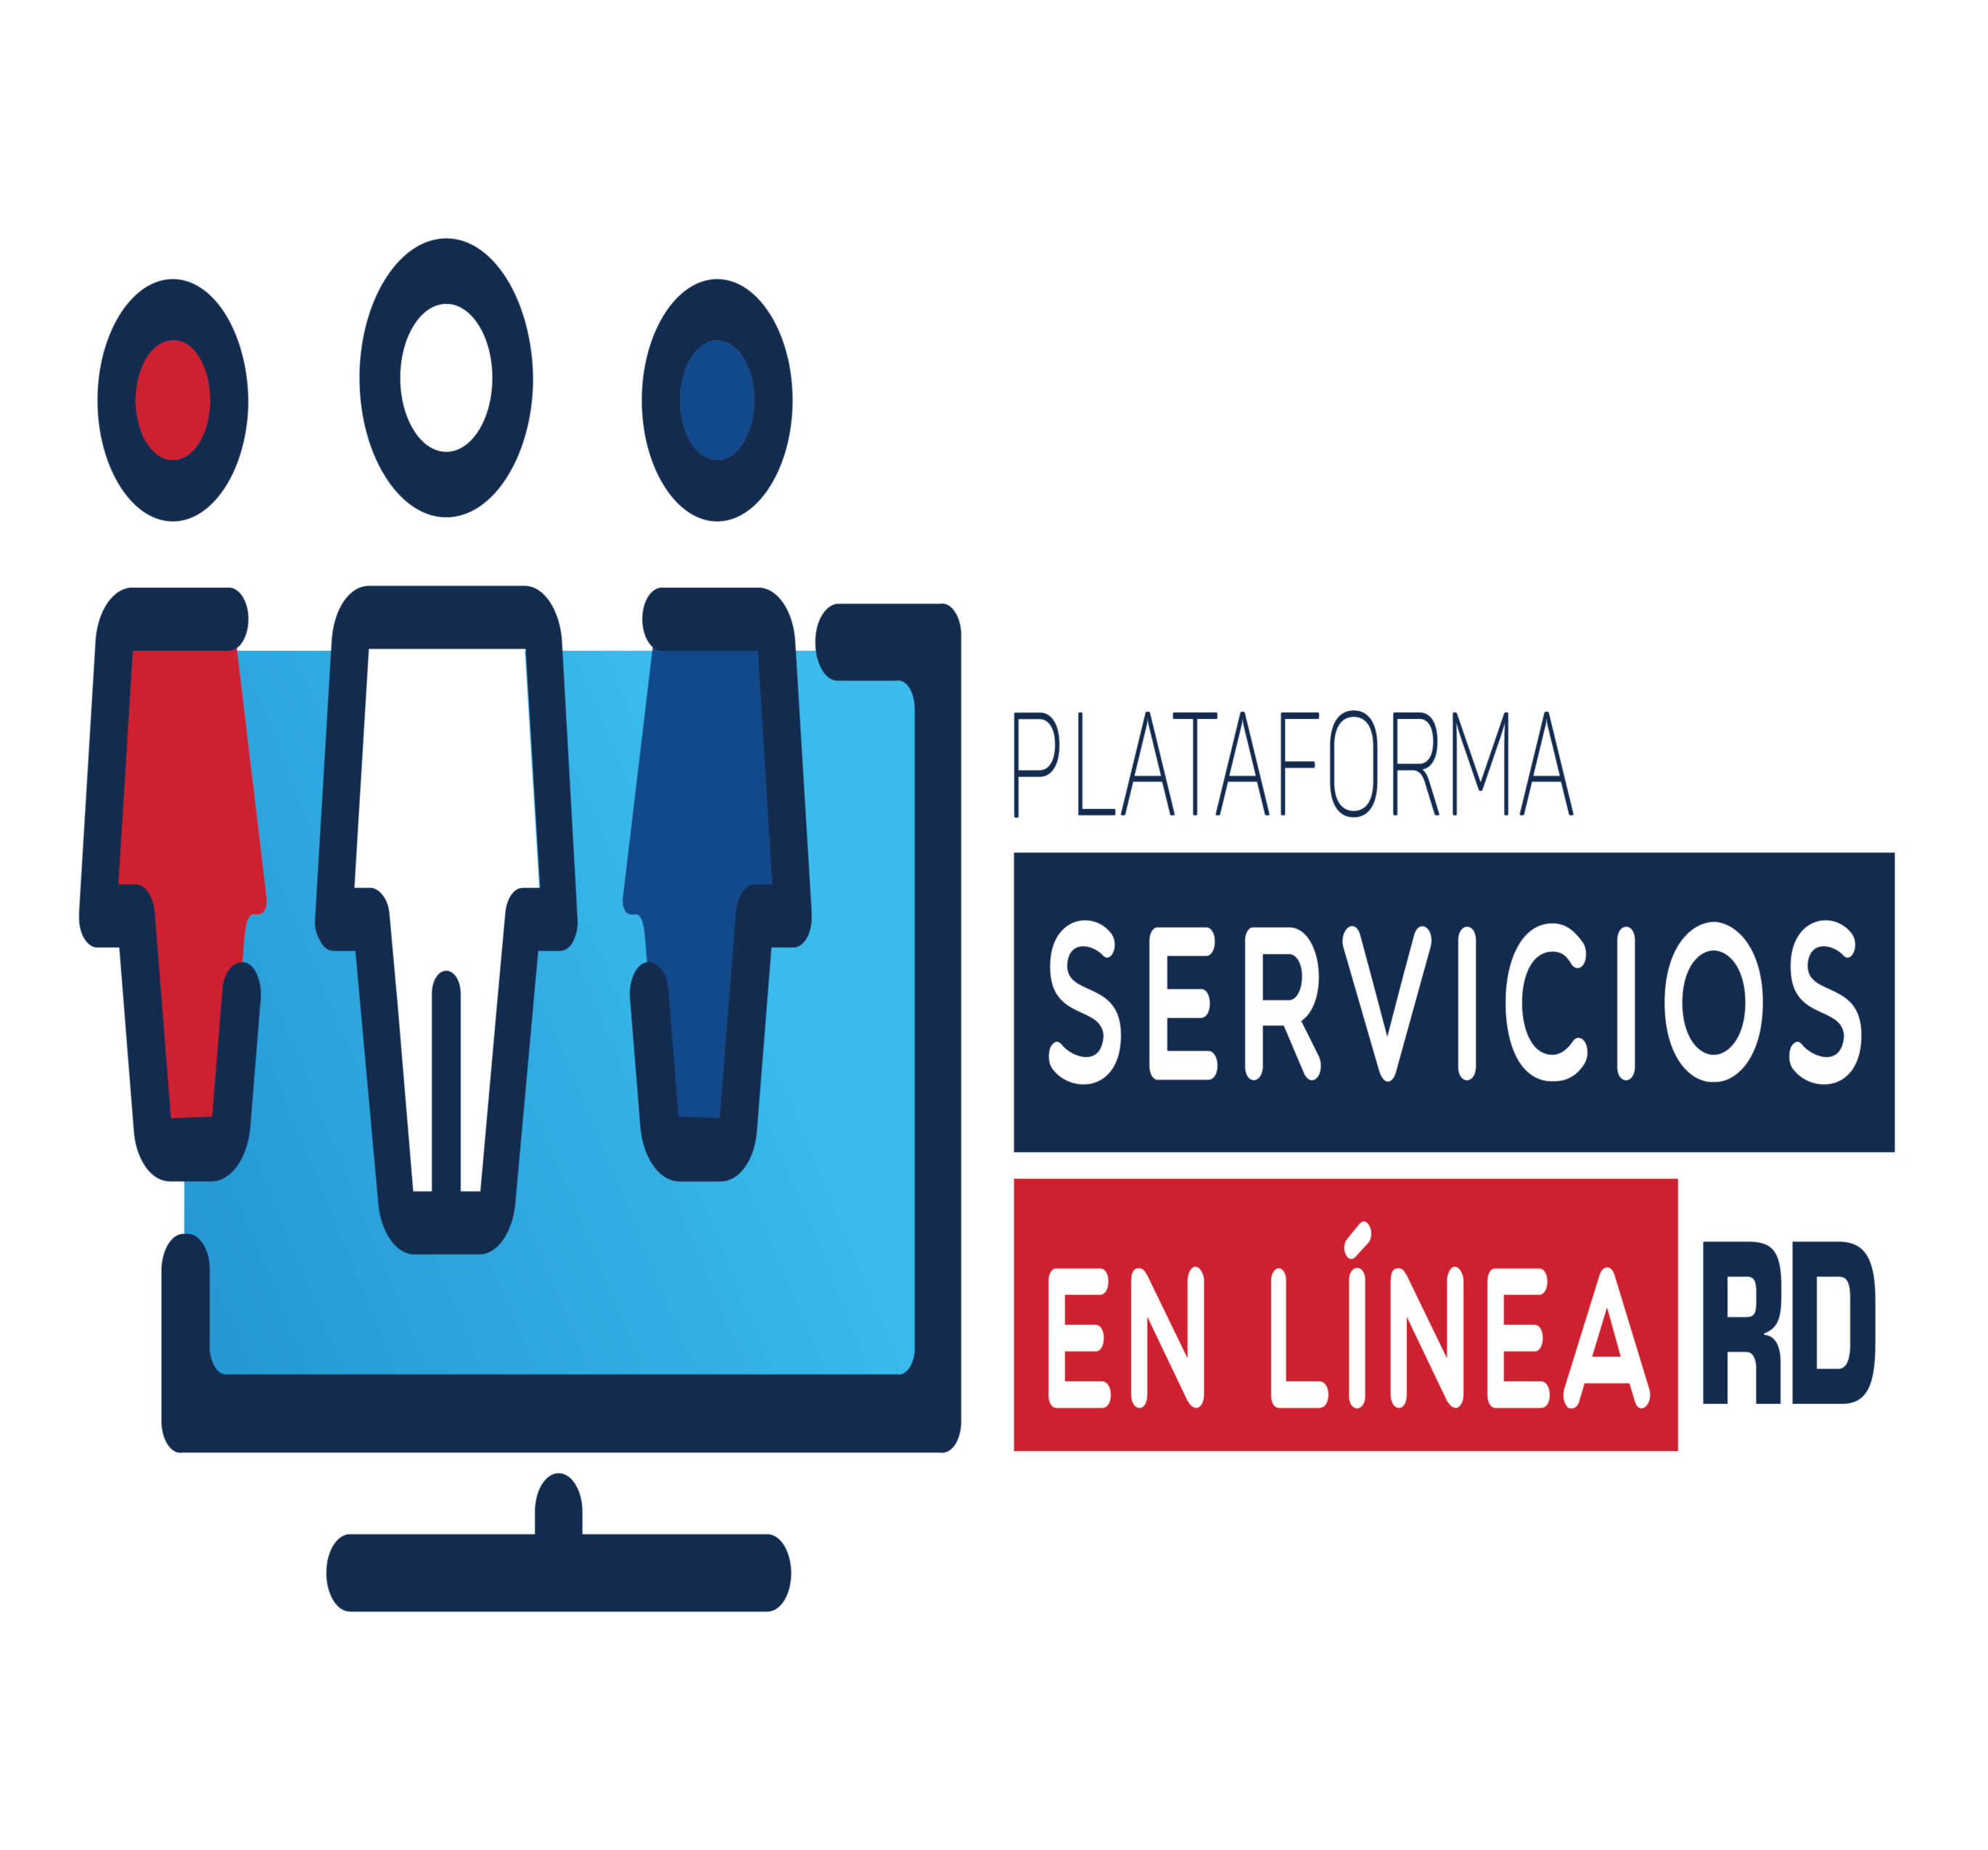 Plataforma servicios en linea 